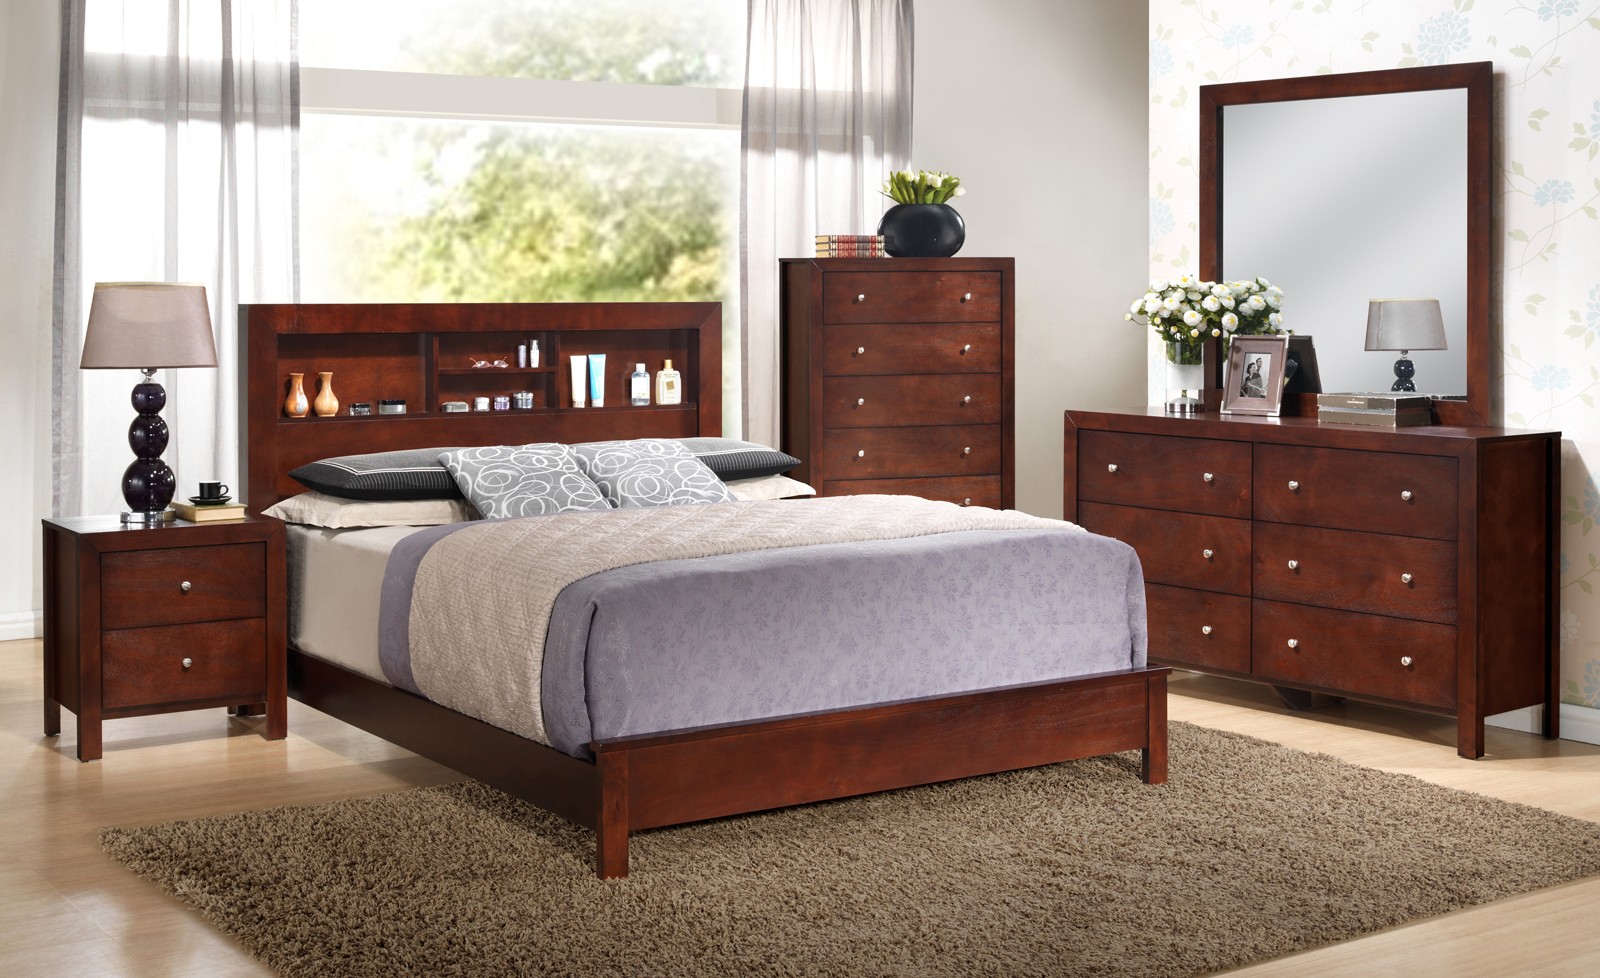 bedroom furniture set queen sale headboard bookcase brown